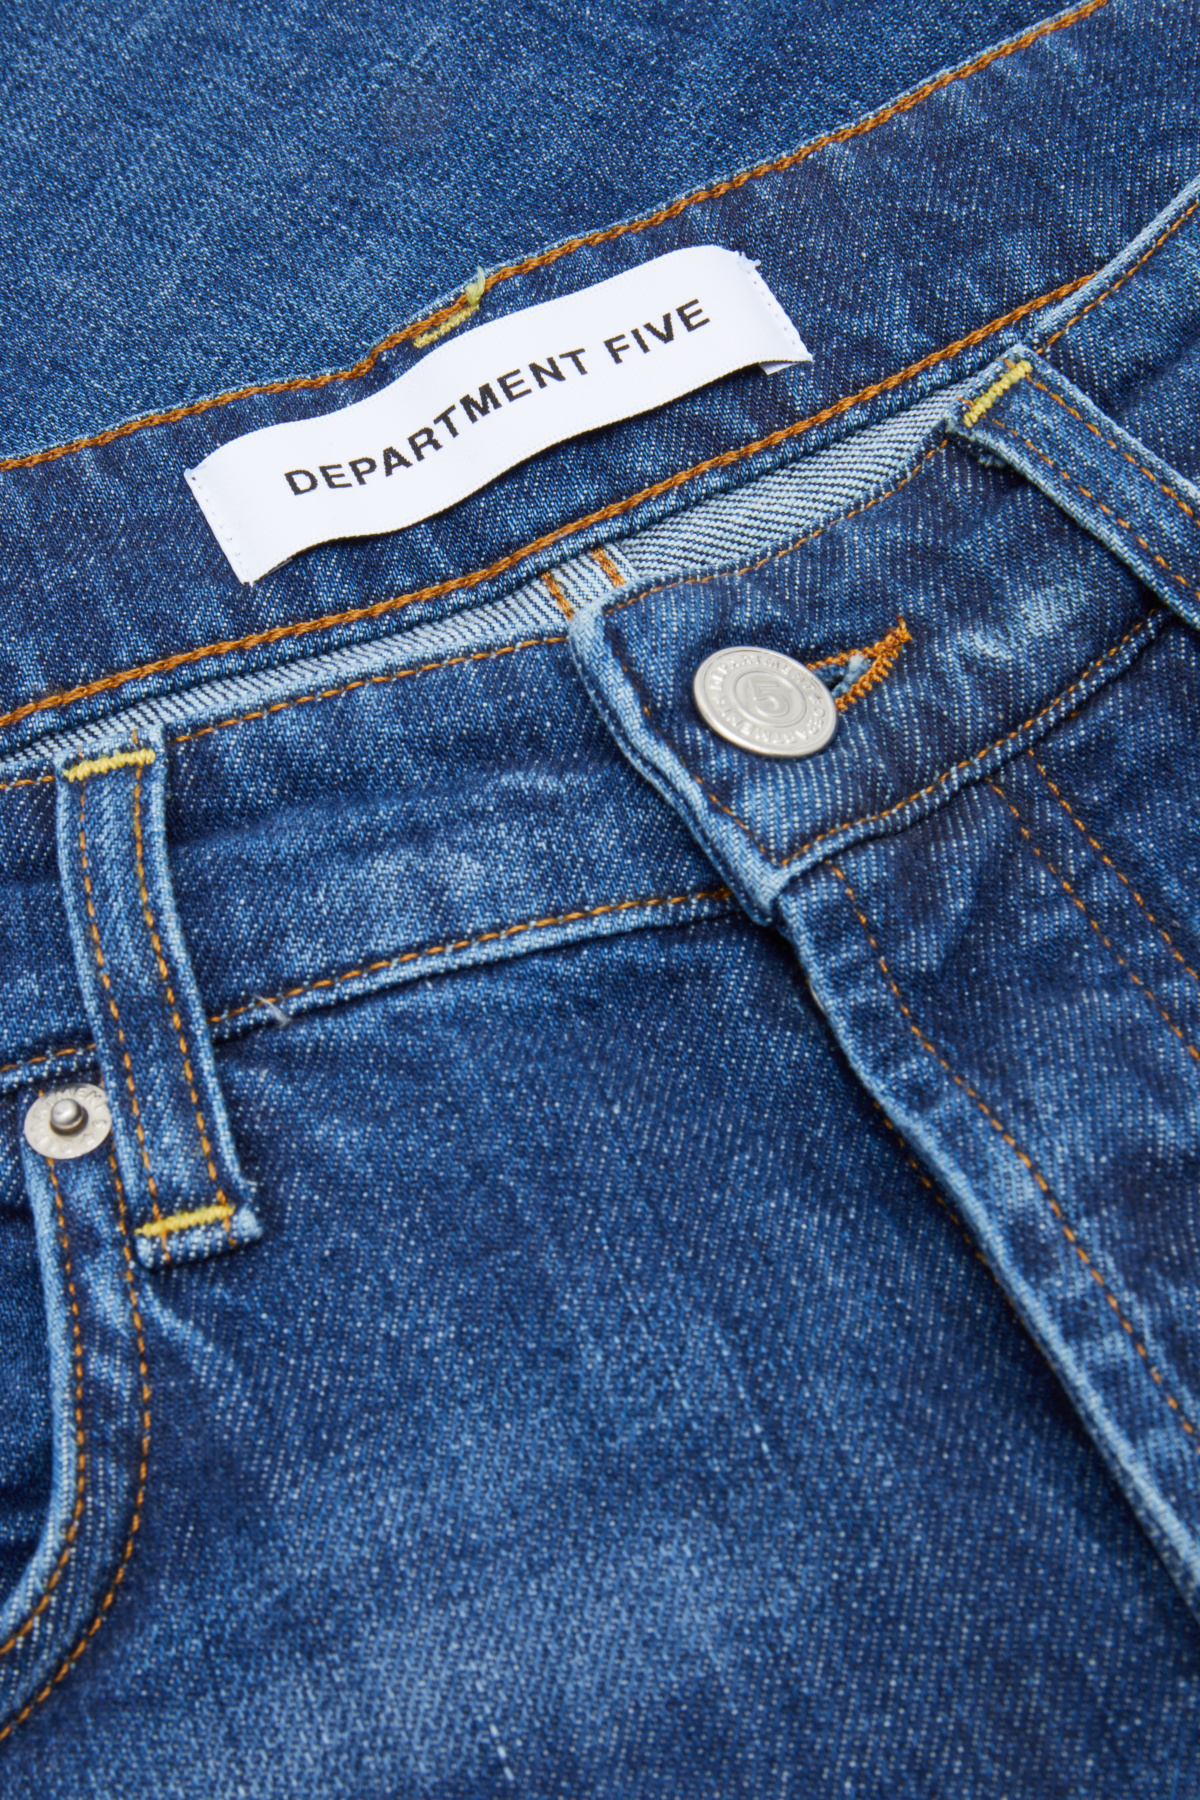 Department 5 Jeans in Blau mit Waschung 440424